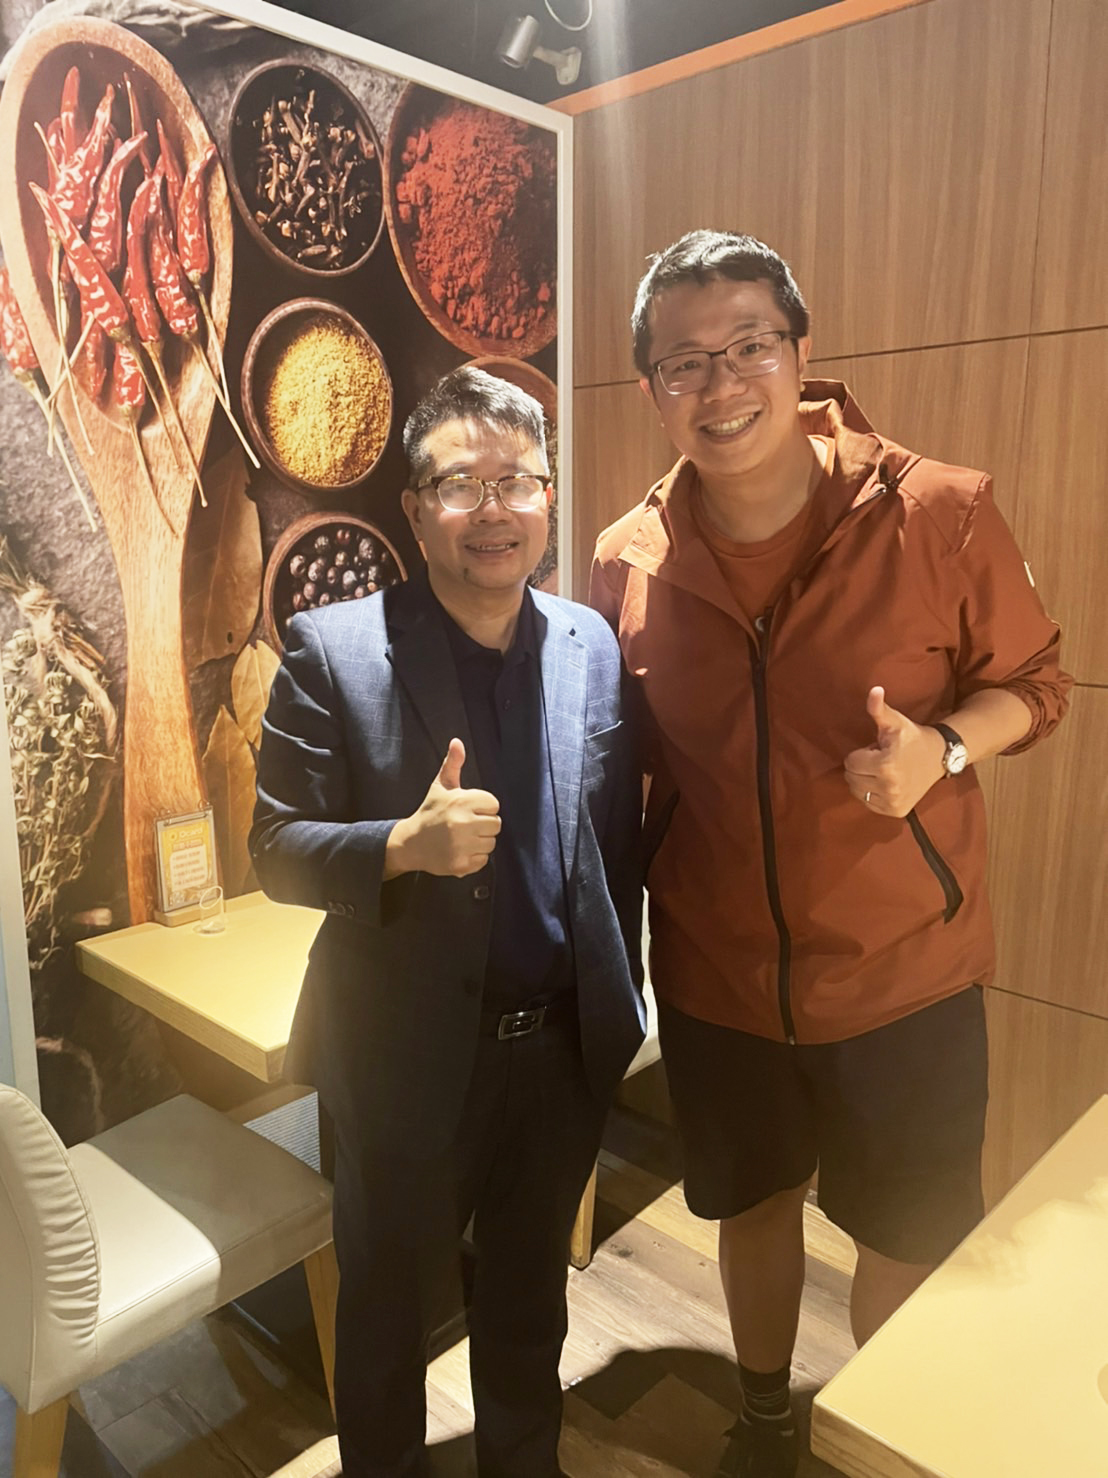 感 謝 澳 洲 最 具 影 響 力 亞 裔 人 士 ─ 教 育 獎 得 主 王 宇 生 校 長 ( 右 ) ， 分 享 在 澳 洲 學 校 的 經 營 與 發 展 心 得 ！ 